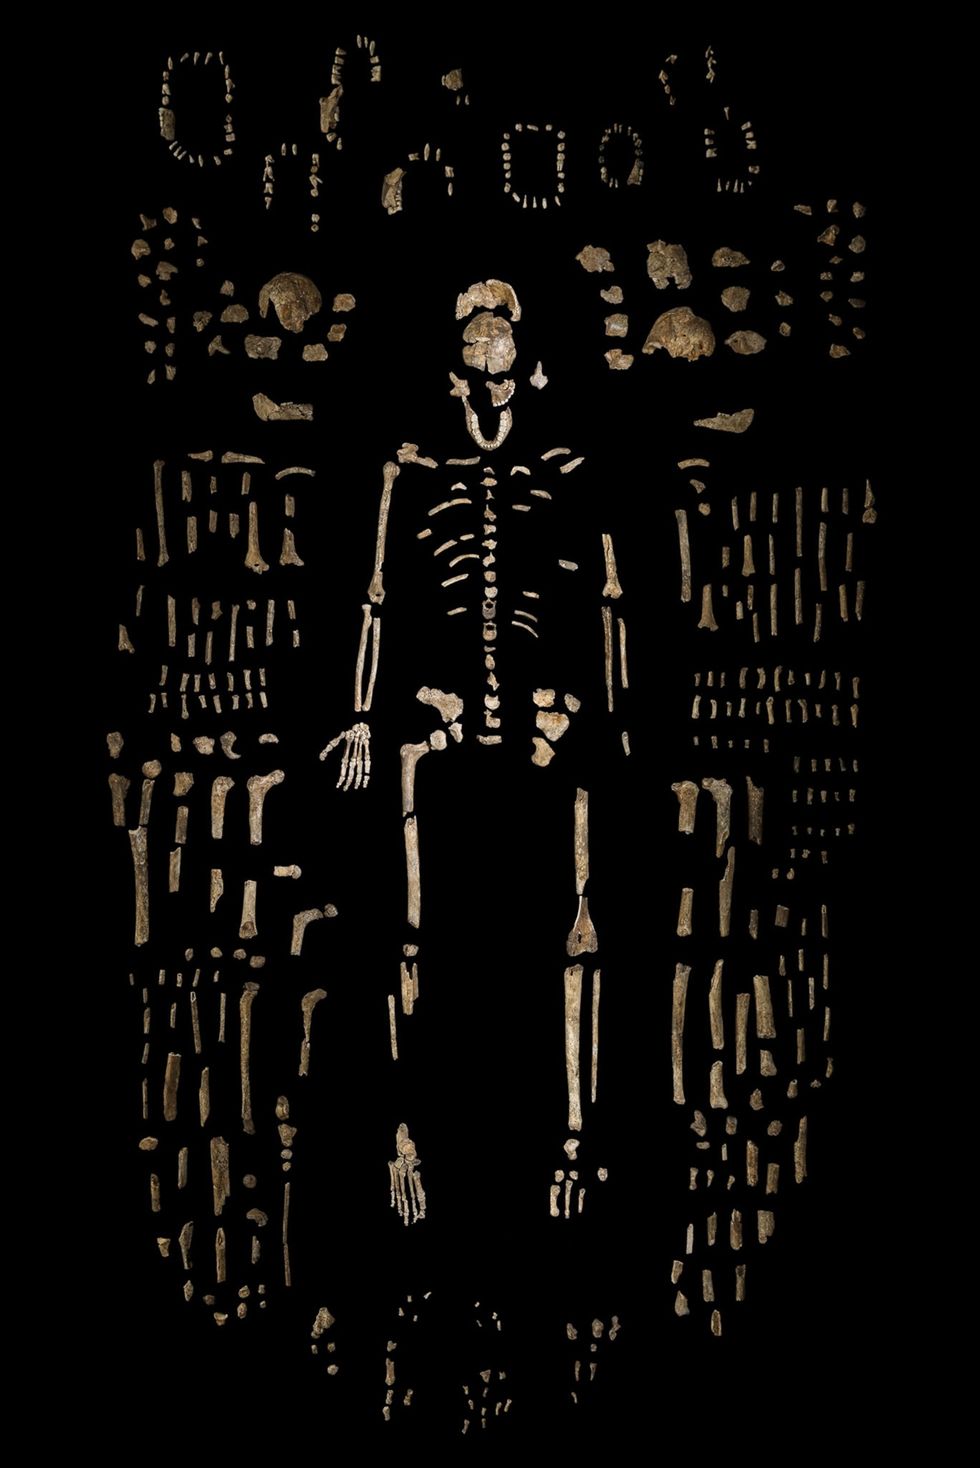 De Dinaledikamer van de grot bevat de resten van minstens 15 Homo naledi waarvan er n te zien is in het bovenstaande samengestelde skelet